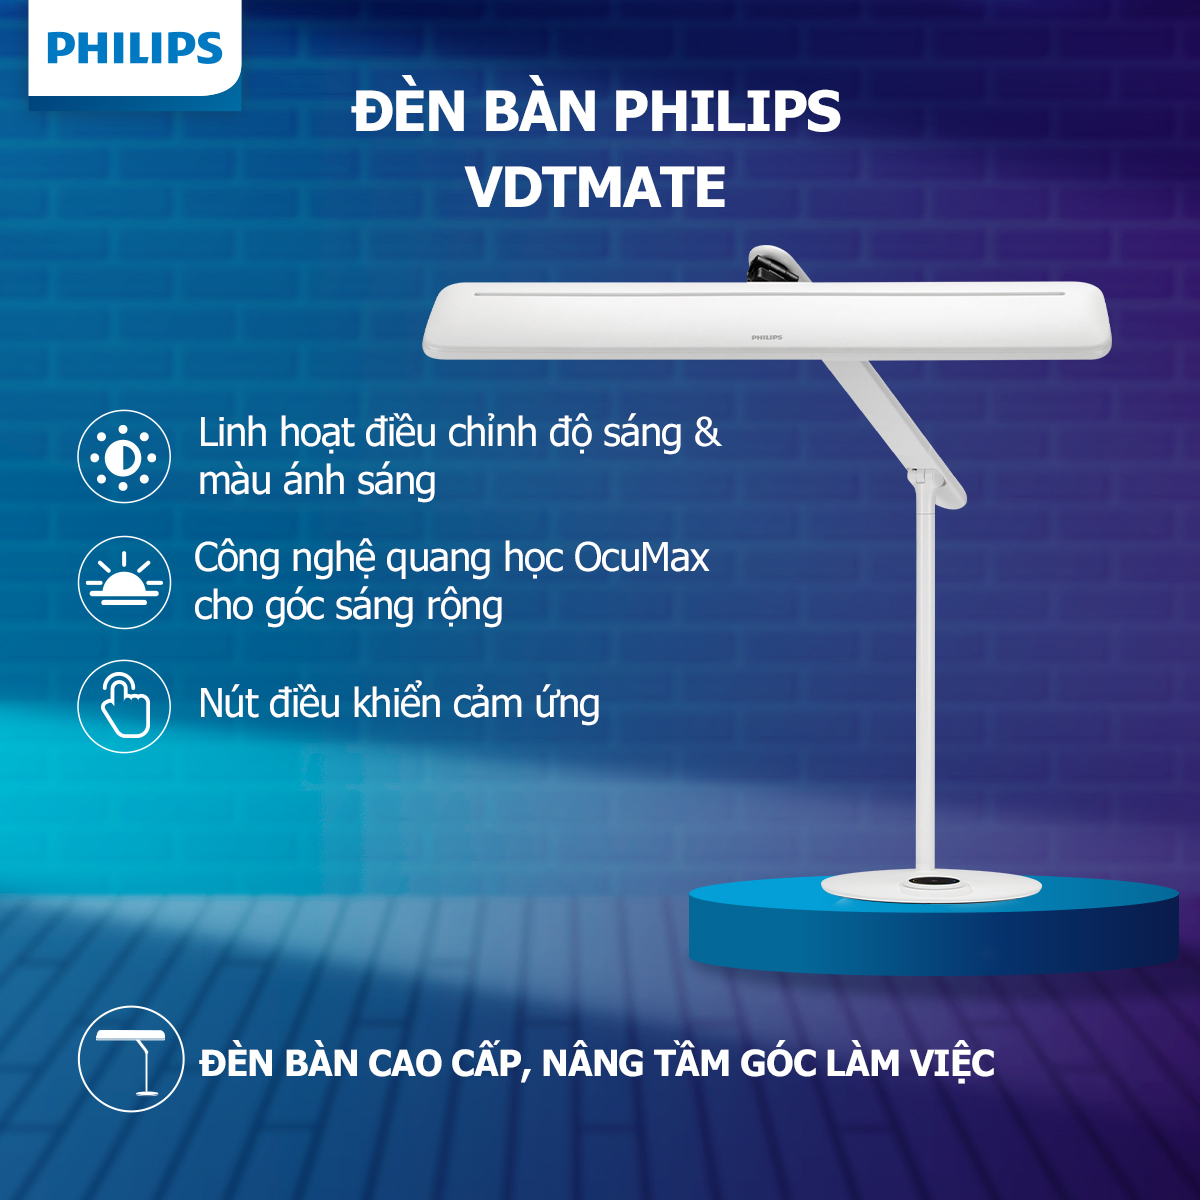 Đèn bàn Philips VDTMate DSK501